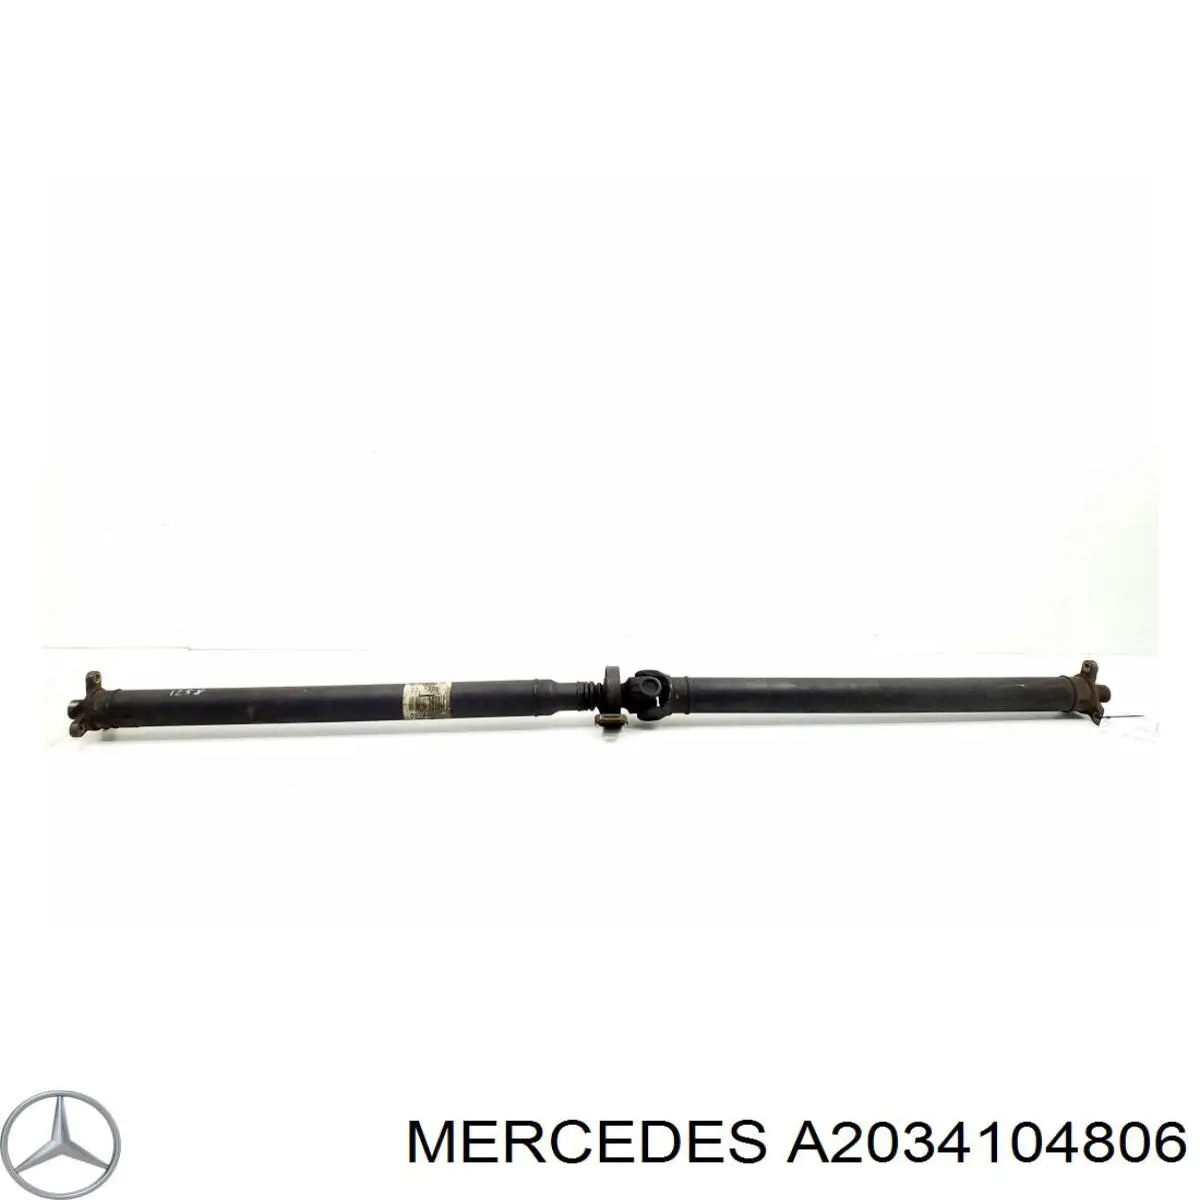 A2034104806 Mercedes junta universal traseira montada